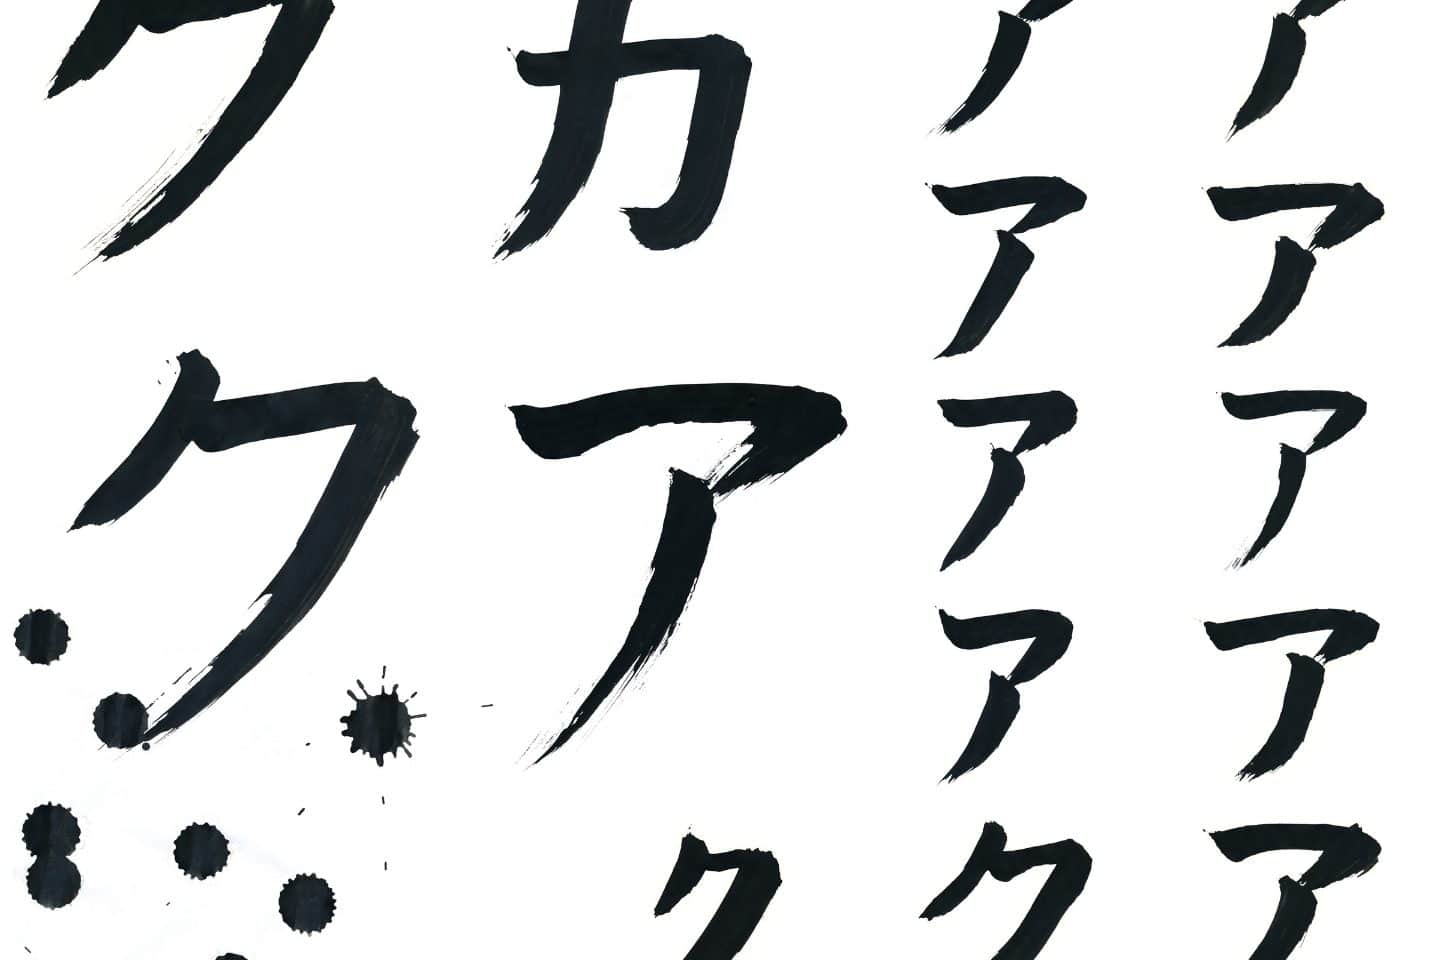 Japanisch lernen: Das Schriftsystem Katakana